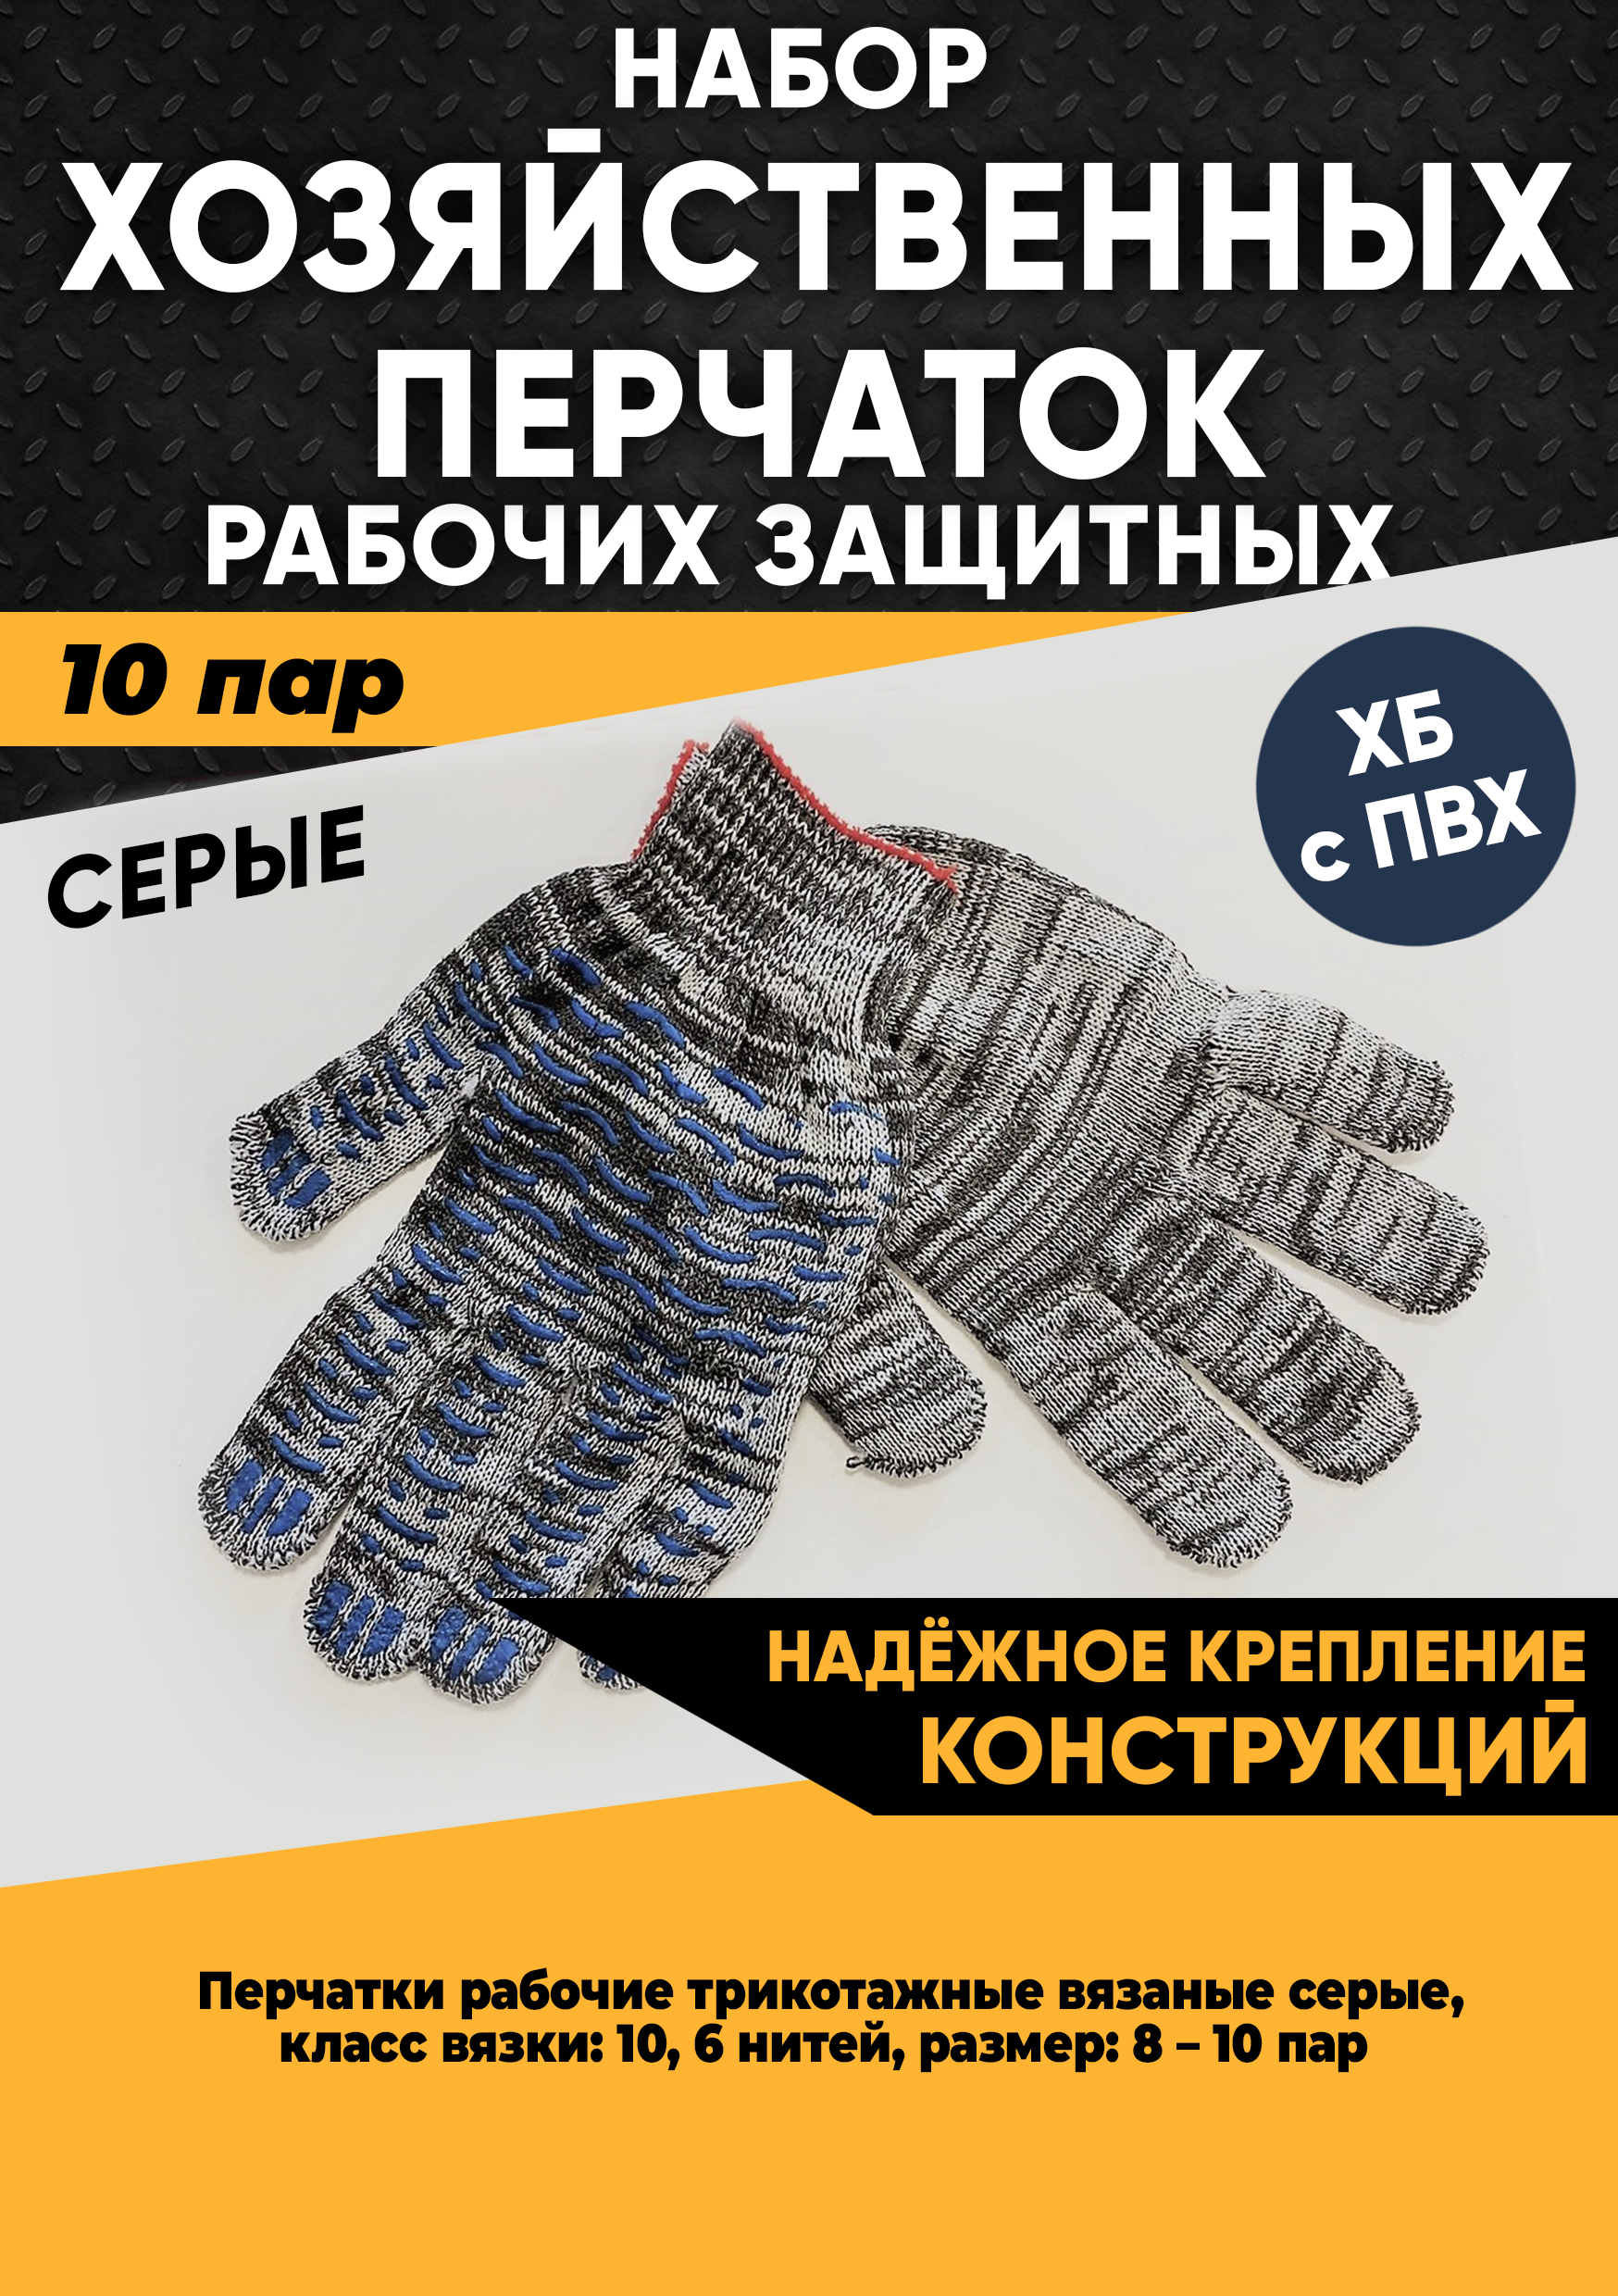 Хозяйственные перчатки KraSimall рабочие защитные ХБ с ПВХ, 6 нитей, серые, 10 пар, 100265 хозяйственные перчатки гк спецобъединение